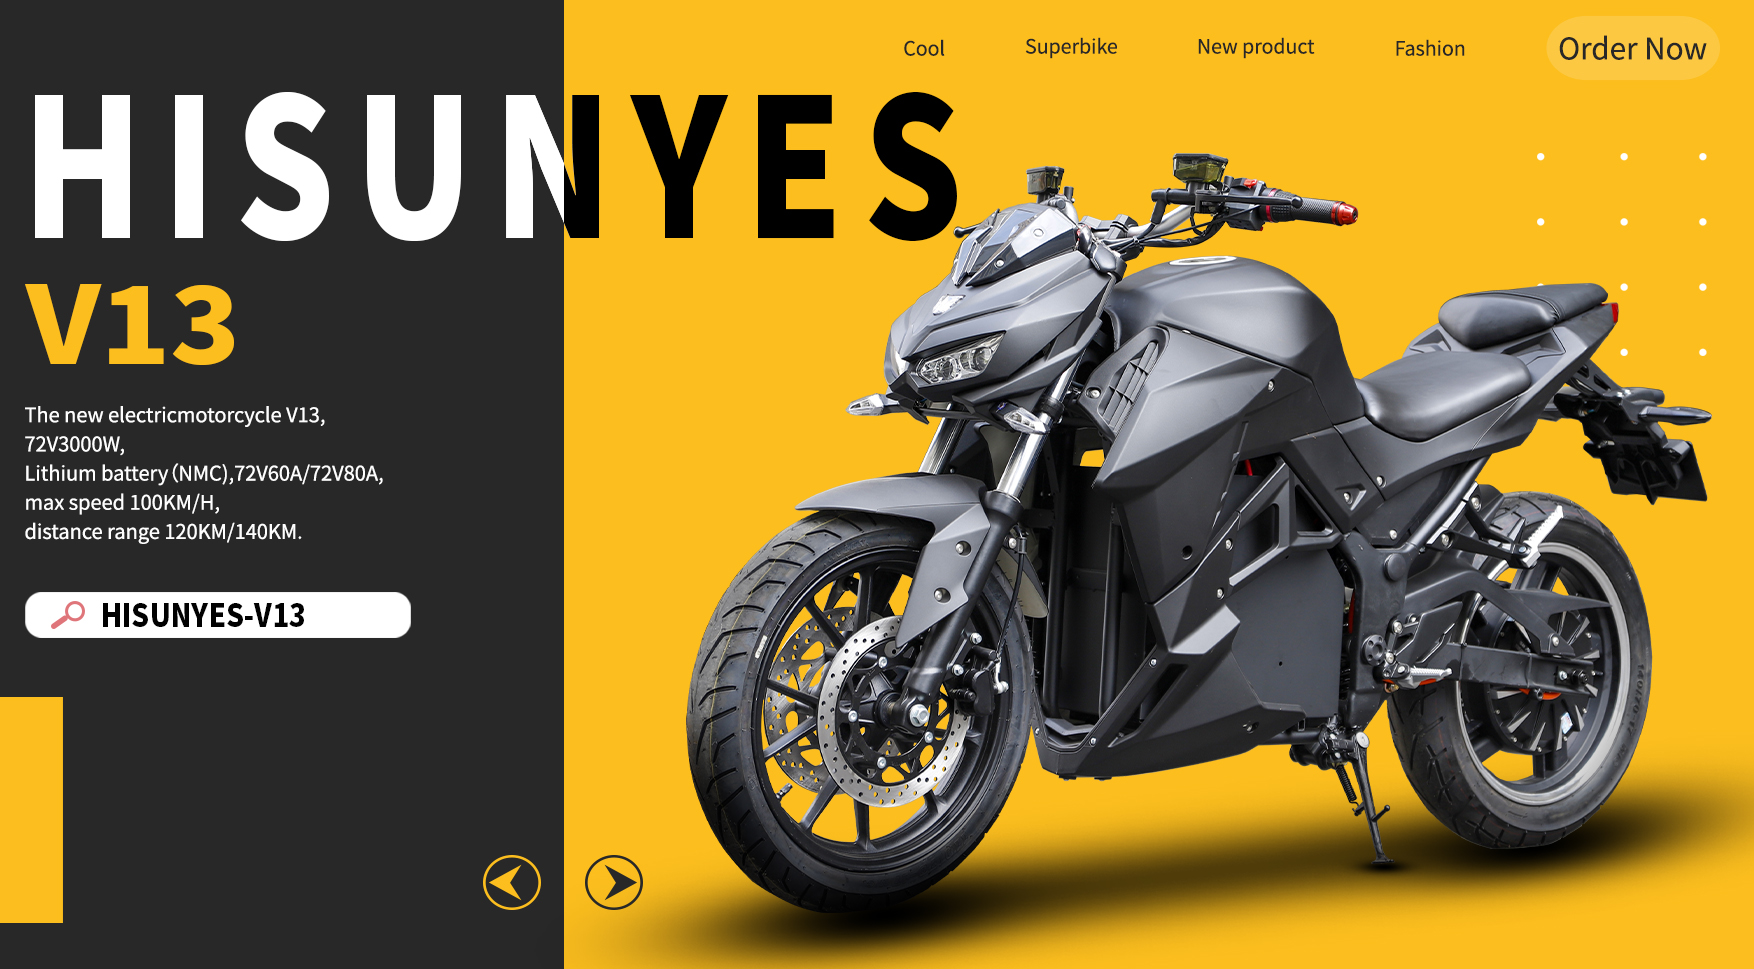 La nouvelle moto électrique hisunyes - v13 alliant style et technologie, venez la découvrir!